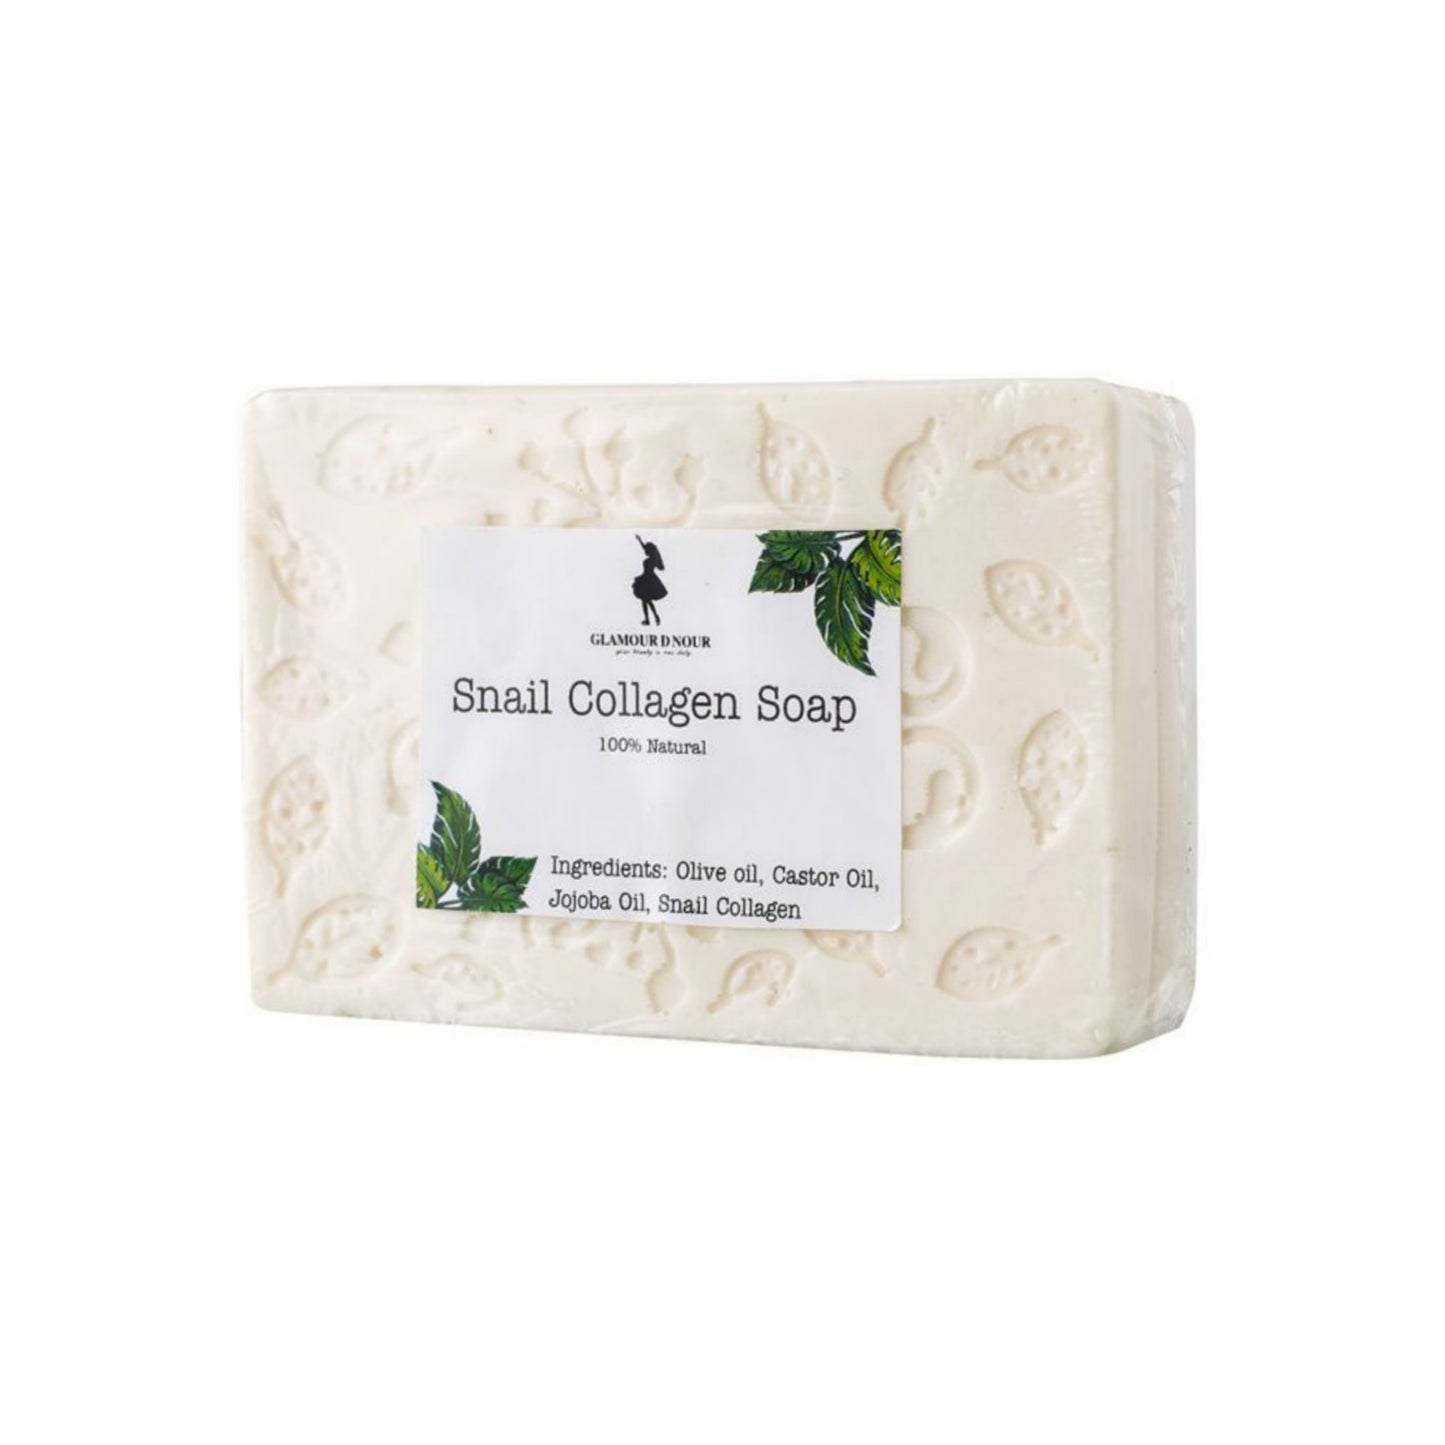 Snail Collagen Soap